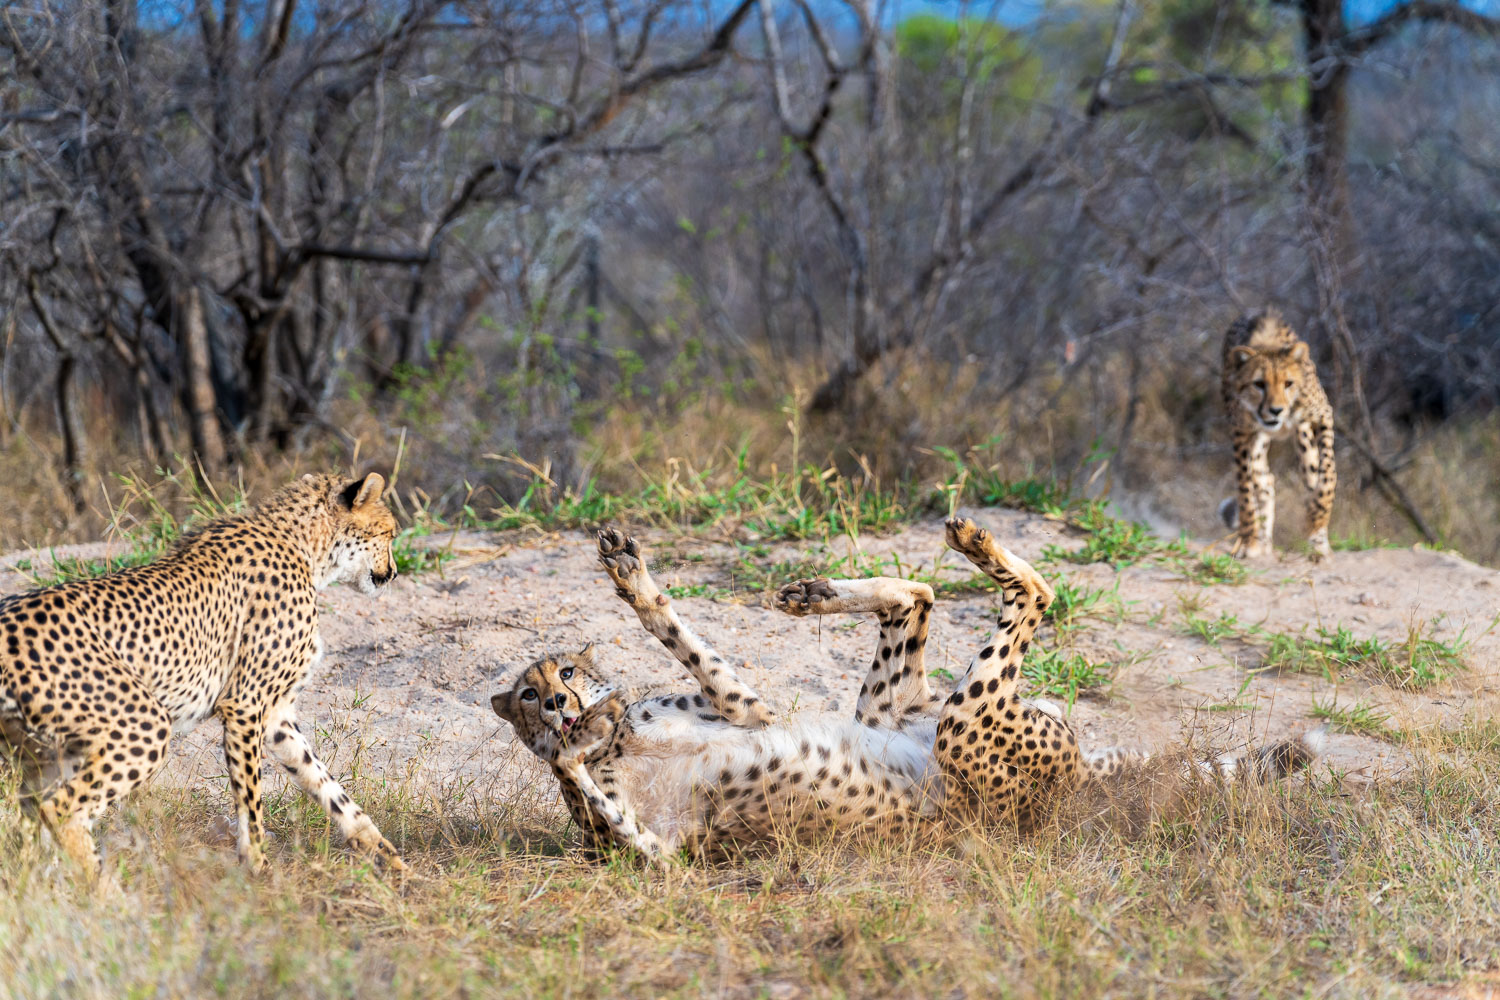 Mit den drei jungen Geparden haben wir heute viel Spaß gehabt. Unser Ranger meinte, sie spielen auch gerne mit einem Ball.